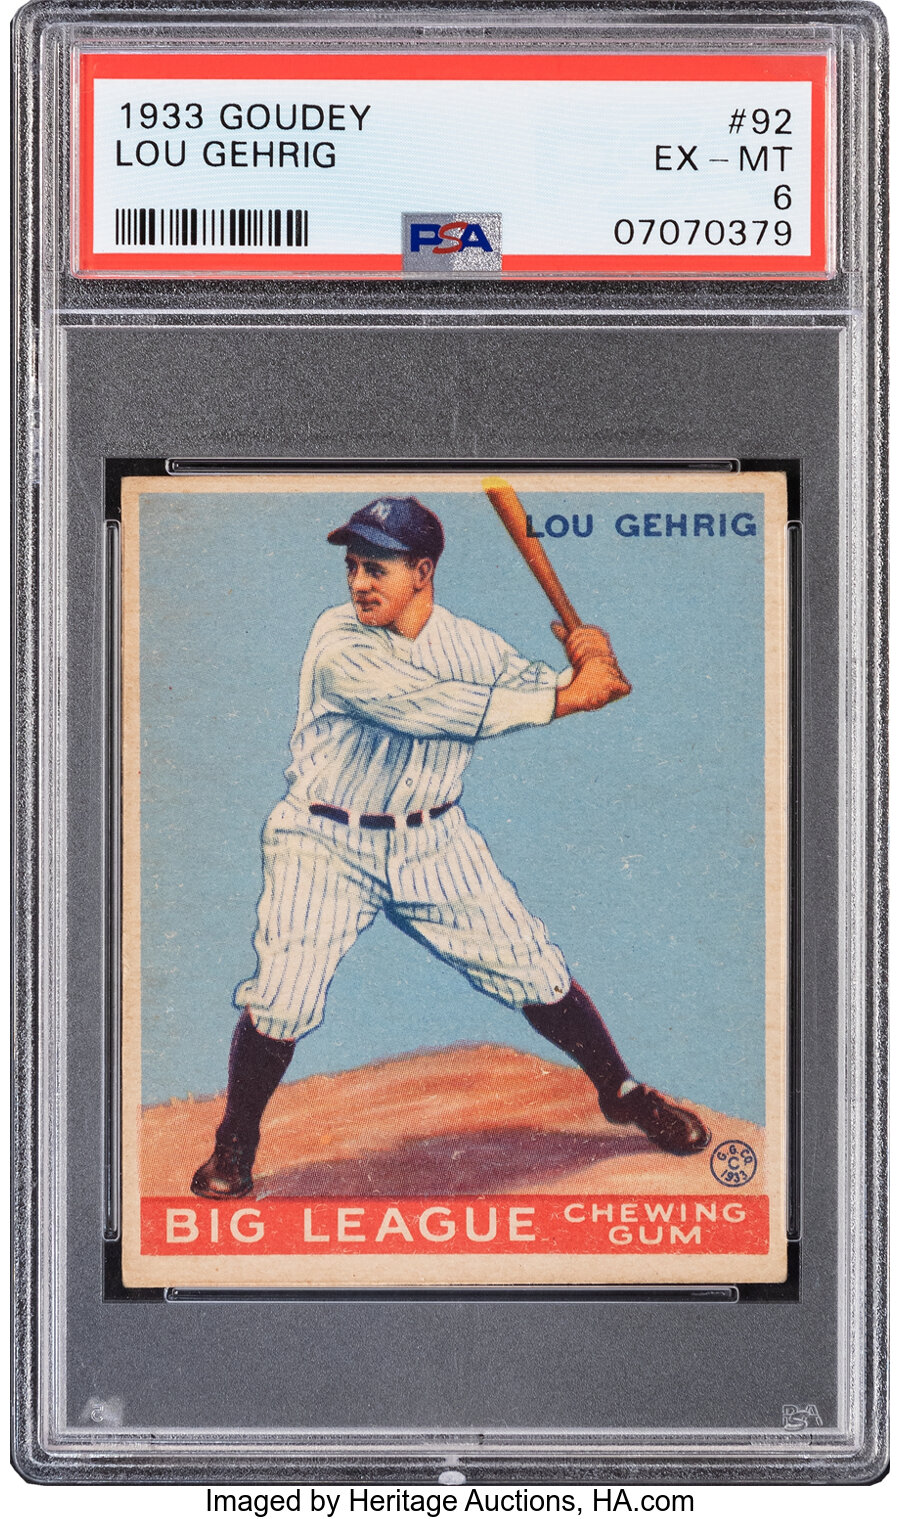 1933 Goudey Lou Gehrig #92 PSA EX-MT 6